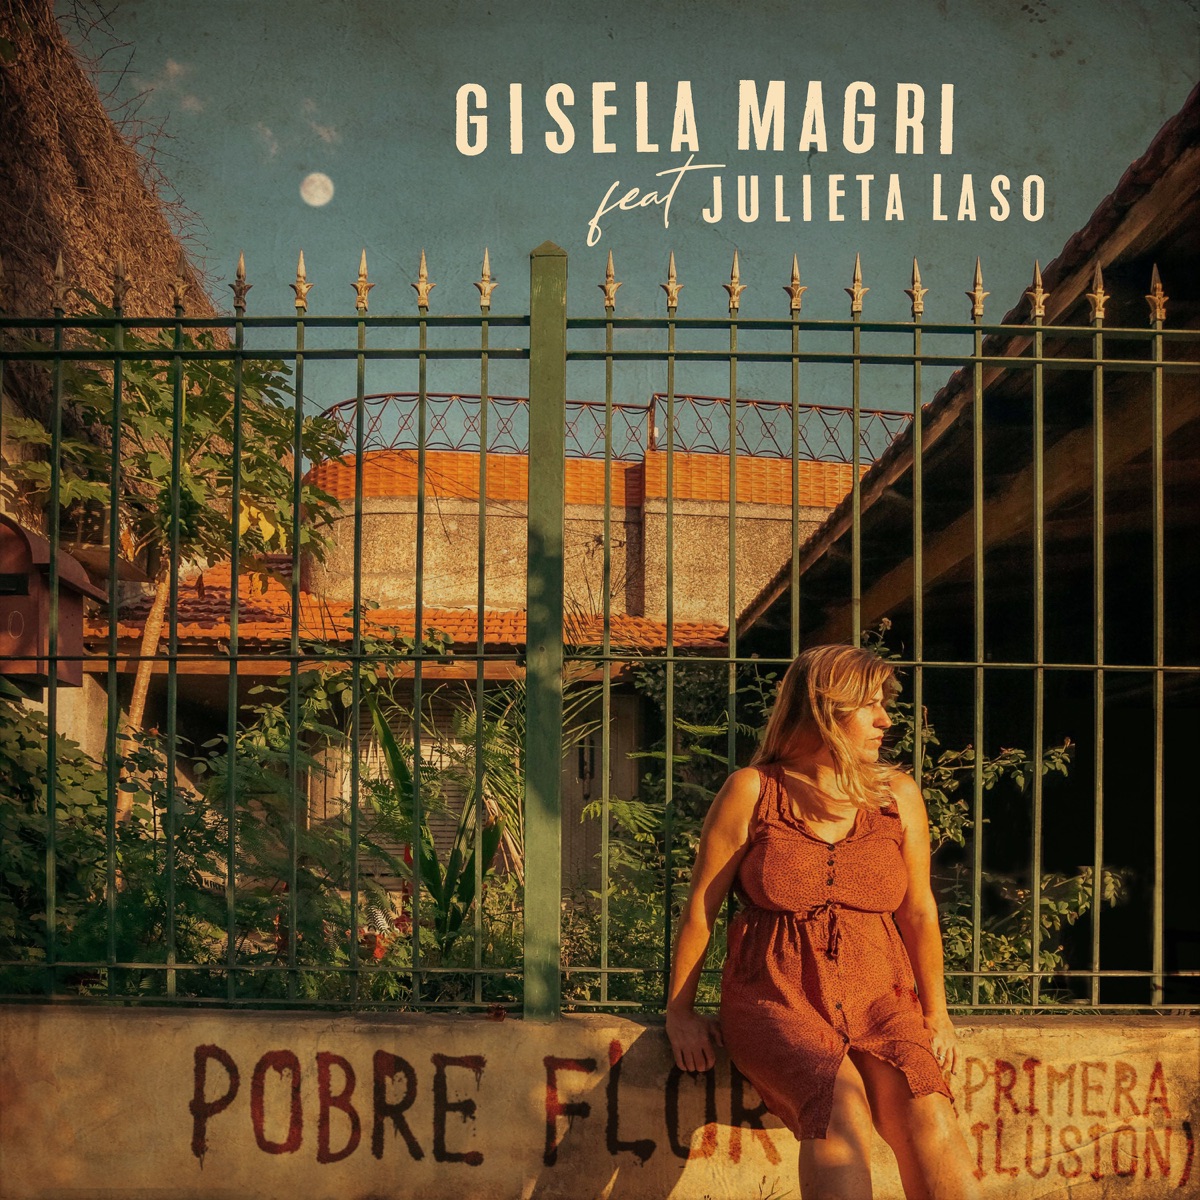 Buenos Aires Vos Quien Sos - Single de Julieta Laso en Apple Music